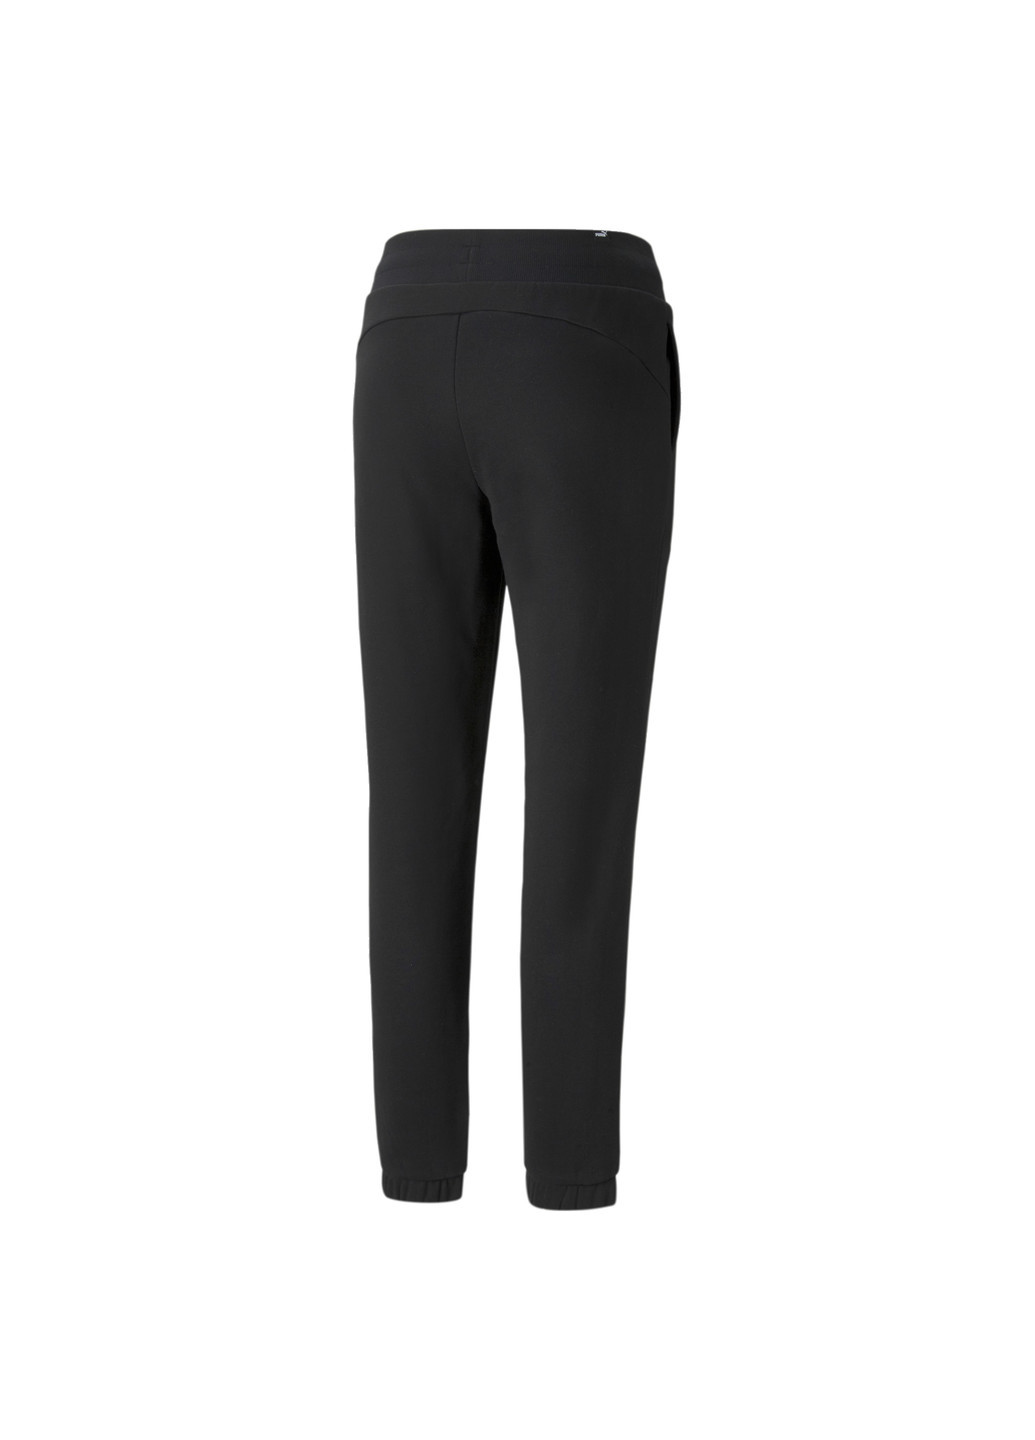 Черные демисезонные штаны essentials+ embroidered fleece women's pants Puma